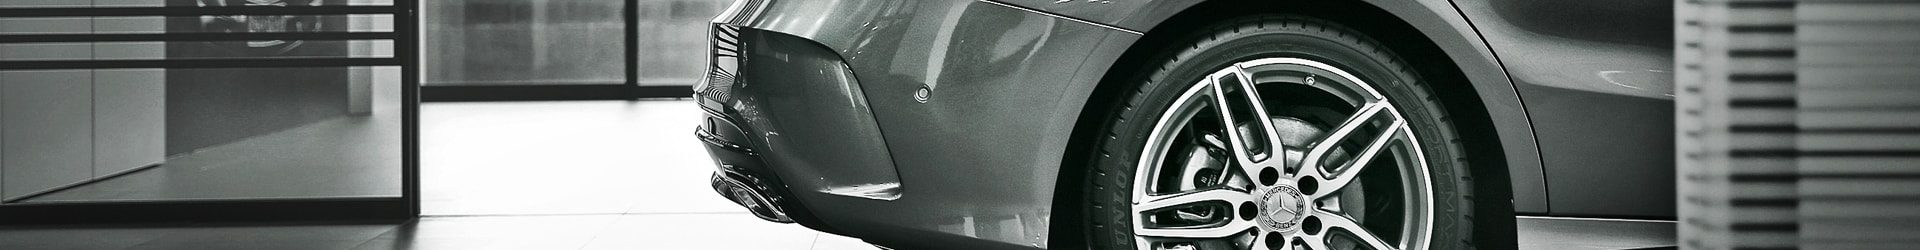 –雙白勁駒– Nissan R35 GTR & Porsche Panamera 同場開箱拍攝